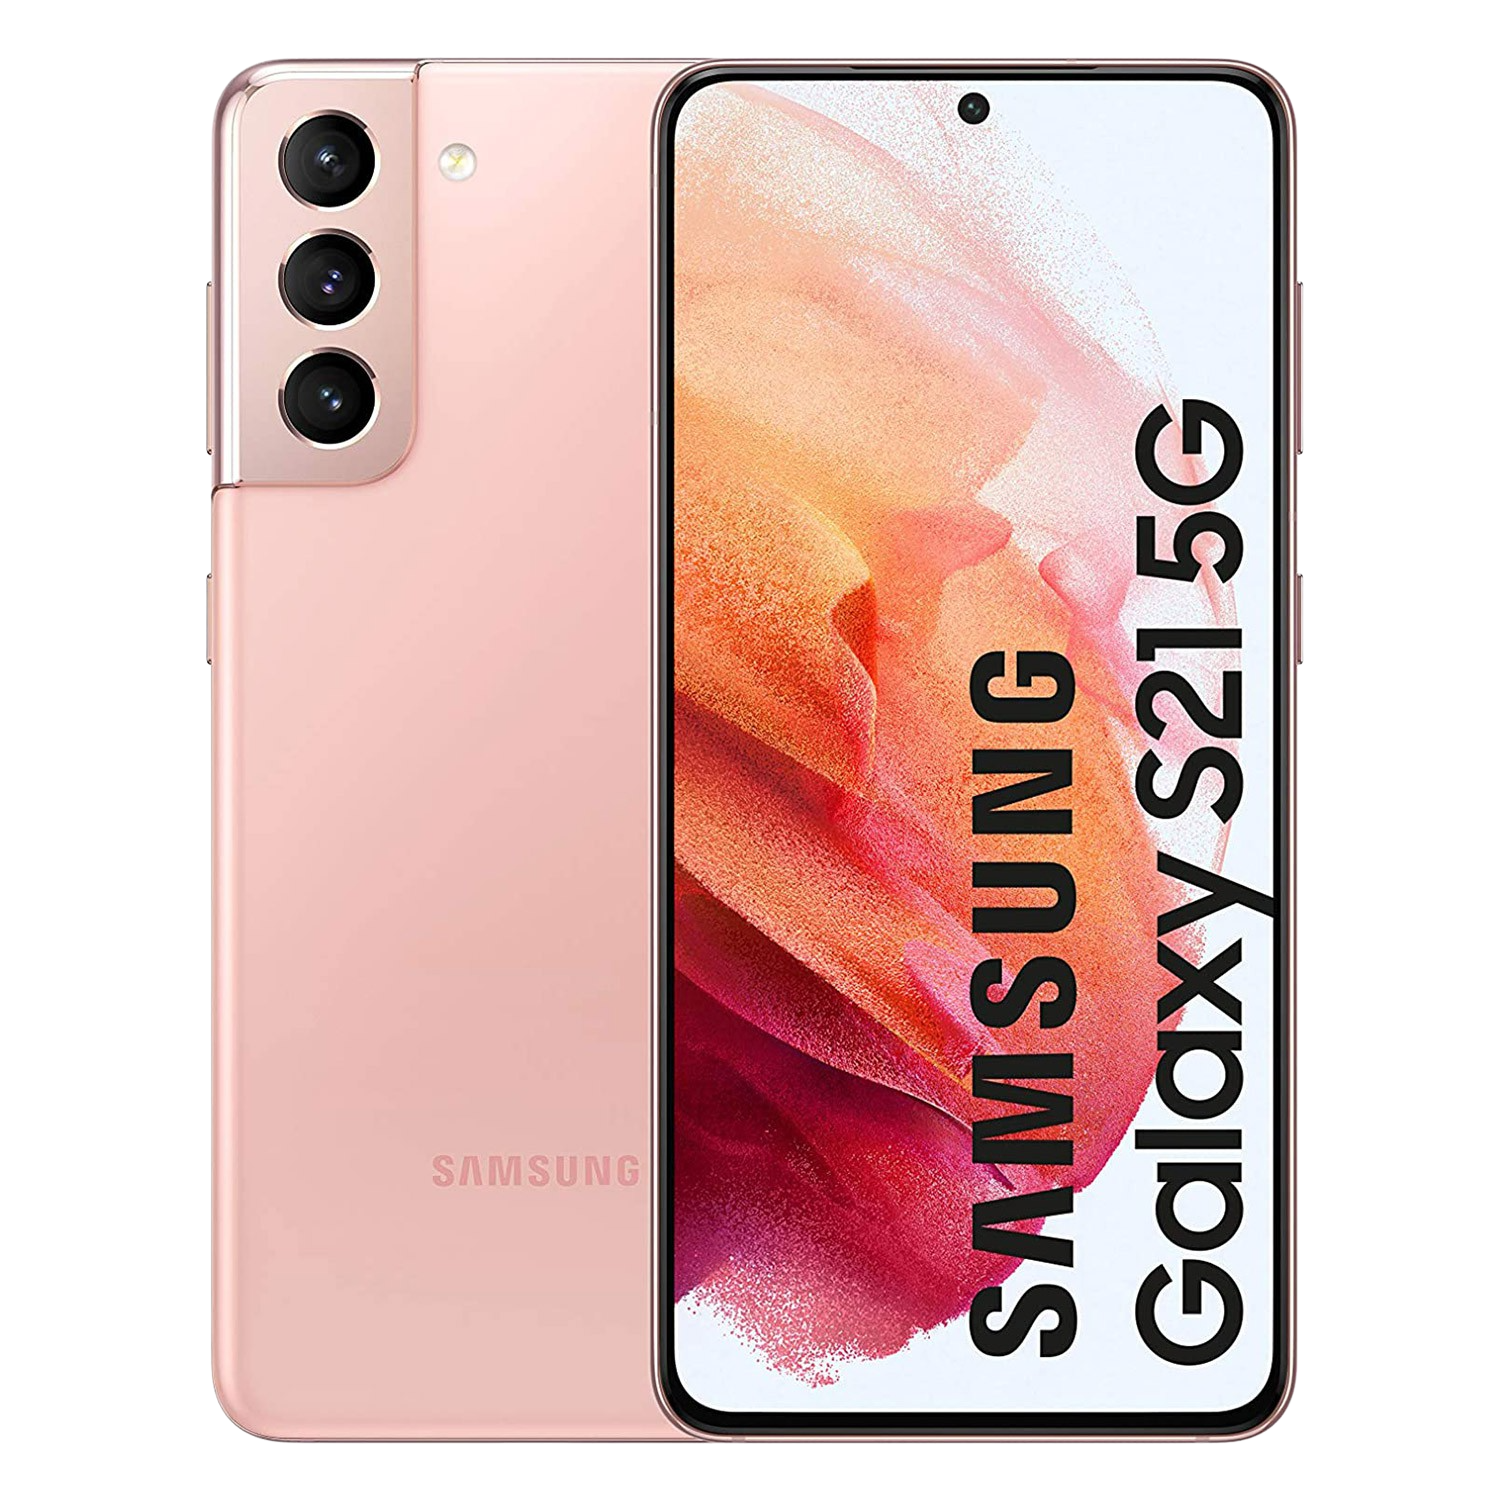 Samsung Galaxy S21 5g 62 128gb rosa 8gb de ram smartphone 128 con sistema operativo android color 6.2 fhd+ 120hz smg991bzideub lector huella dactilar 15.74 8gb128gb 8 2100 4000